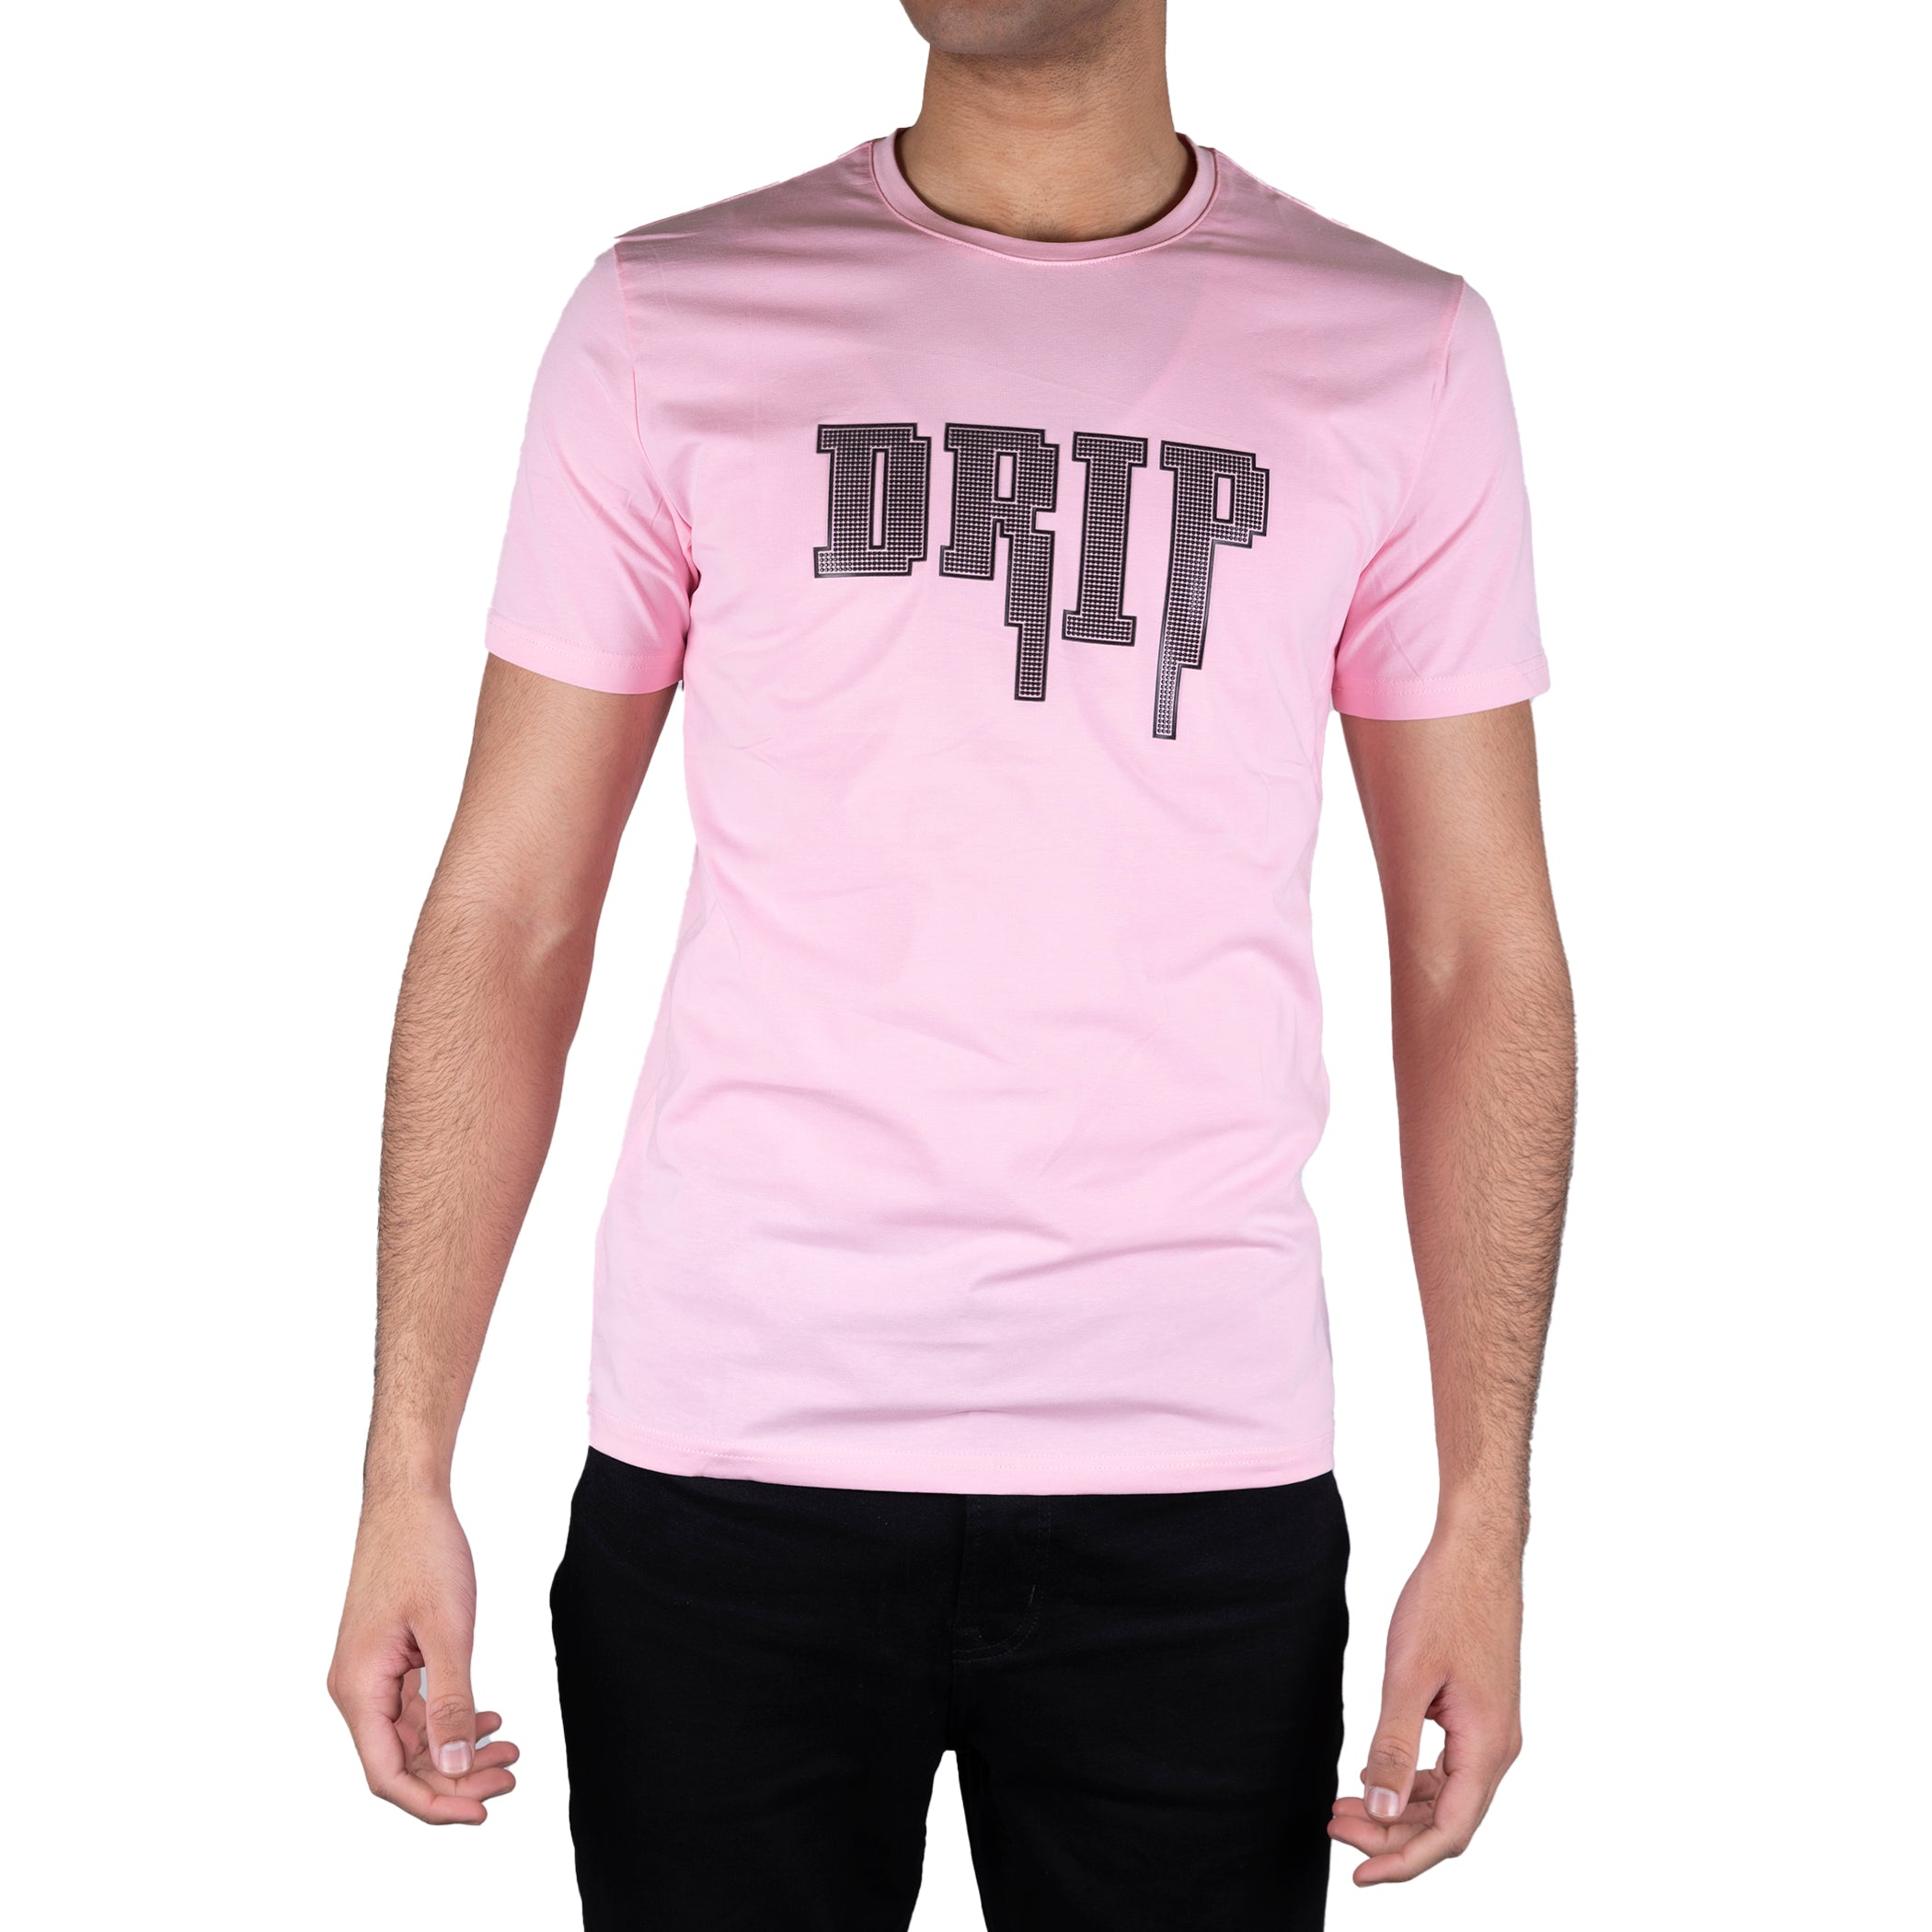 TR PREMIUM TSHIRT "Drip Graphic T-shirt" TRT-209